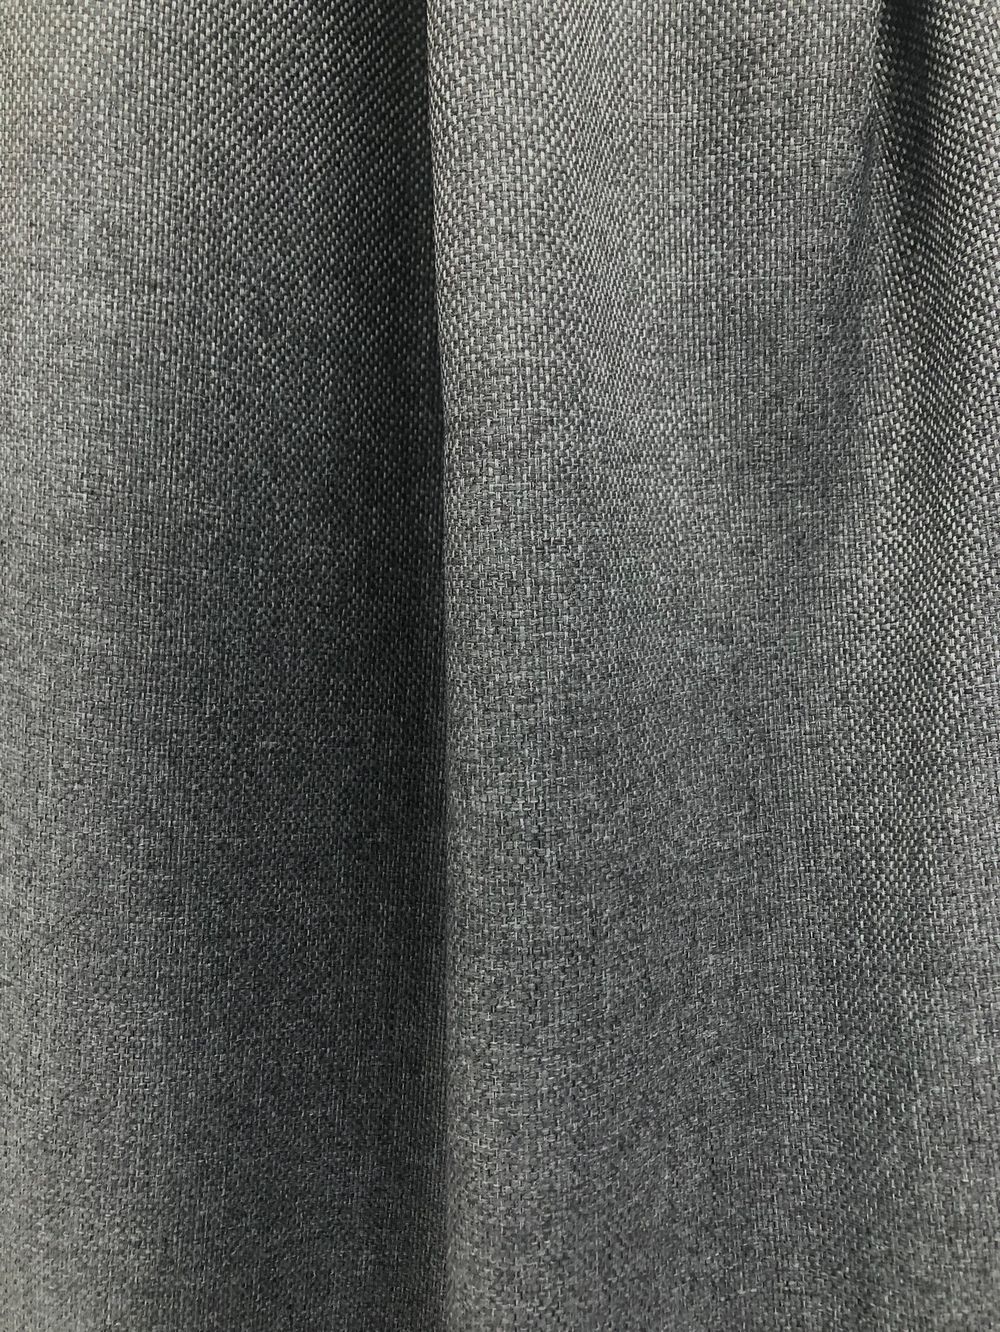 Ткань портьерная Блэкаут-лен, цвет серый, артикул 327415